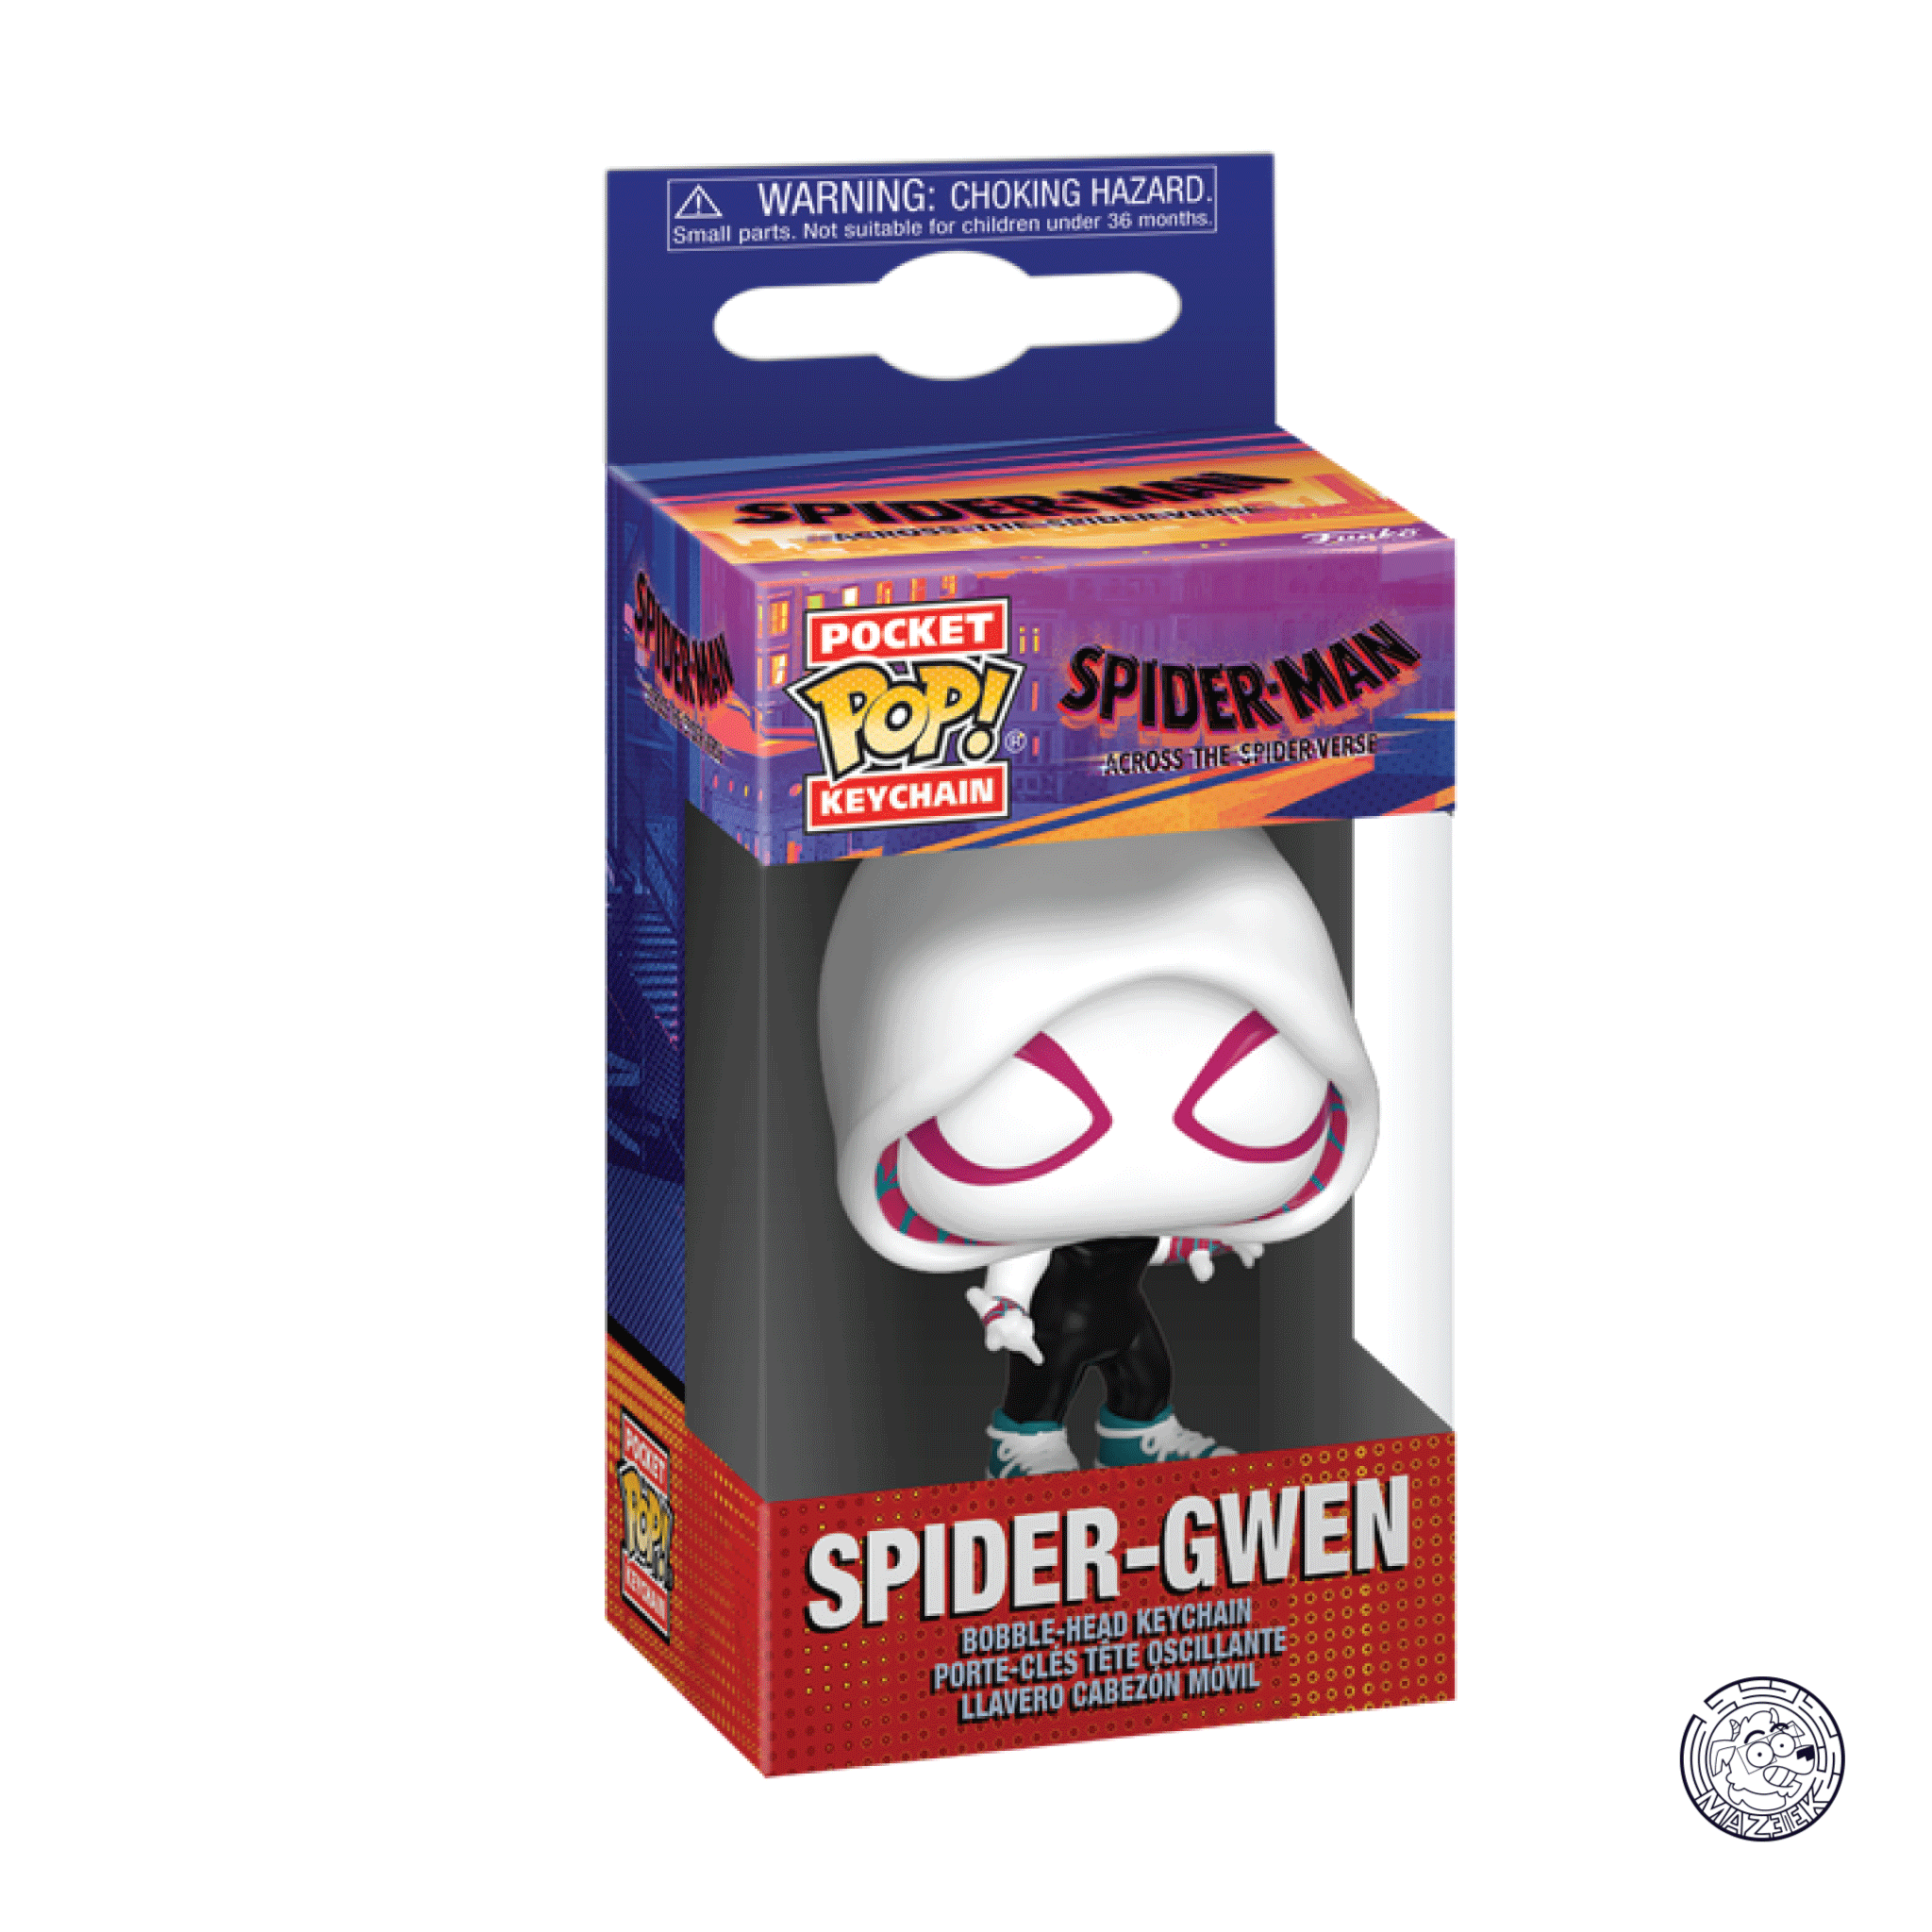 Pocket POP! Spider-man keychain: Spider-Gwen